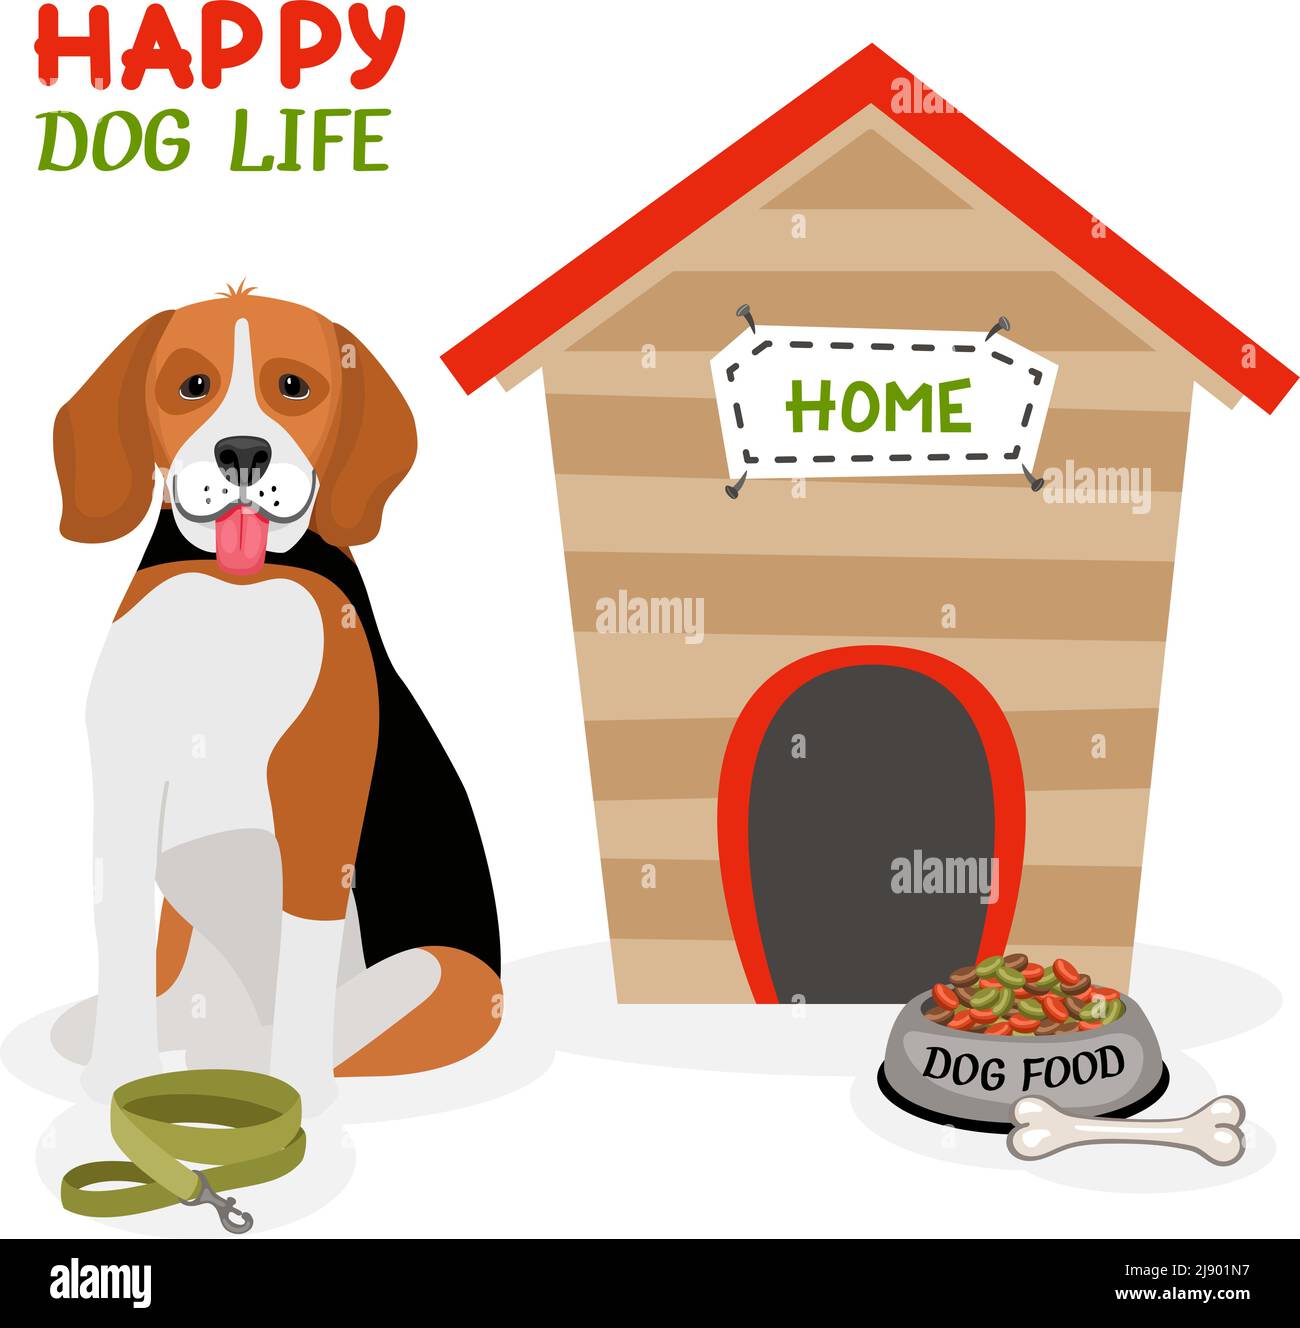 Happy Dog Life Vektor-Poster-Design mit einem niedlichen Beagle Mit der Zunge vor einem hundehütte sitzend Mit einem Bleiknochen und einer Schüssel mit Nahrung Stock Vektor